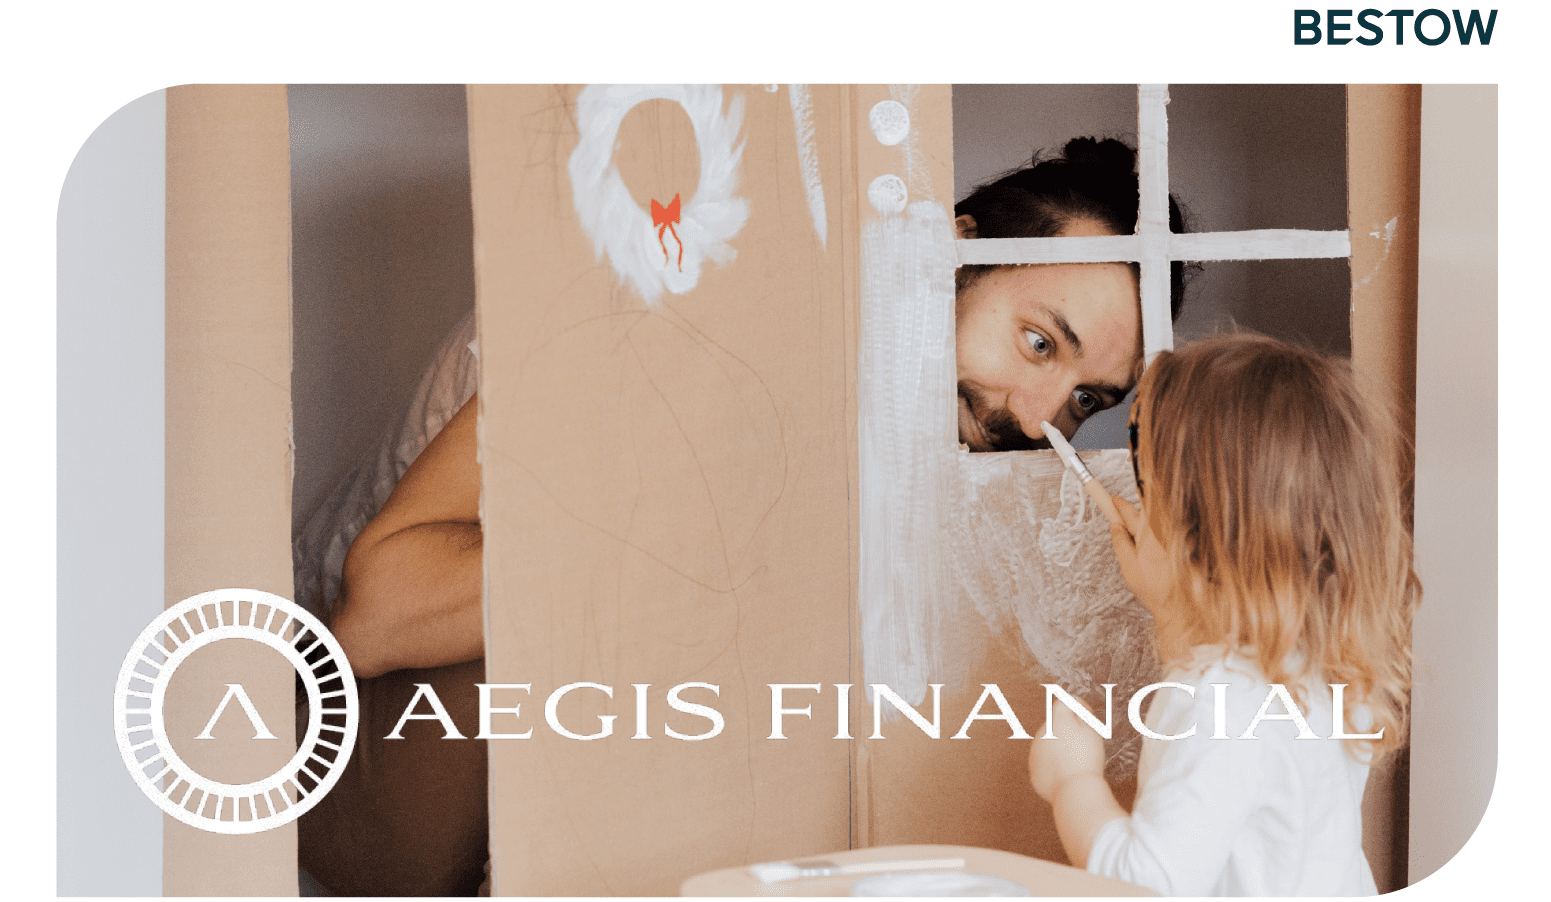 Bestow-Aegis Financial